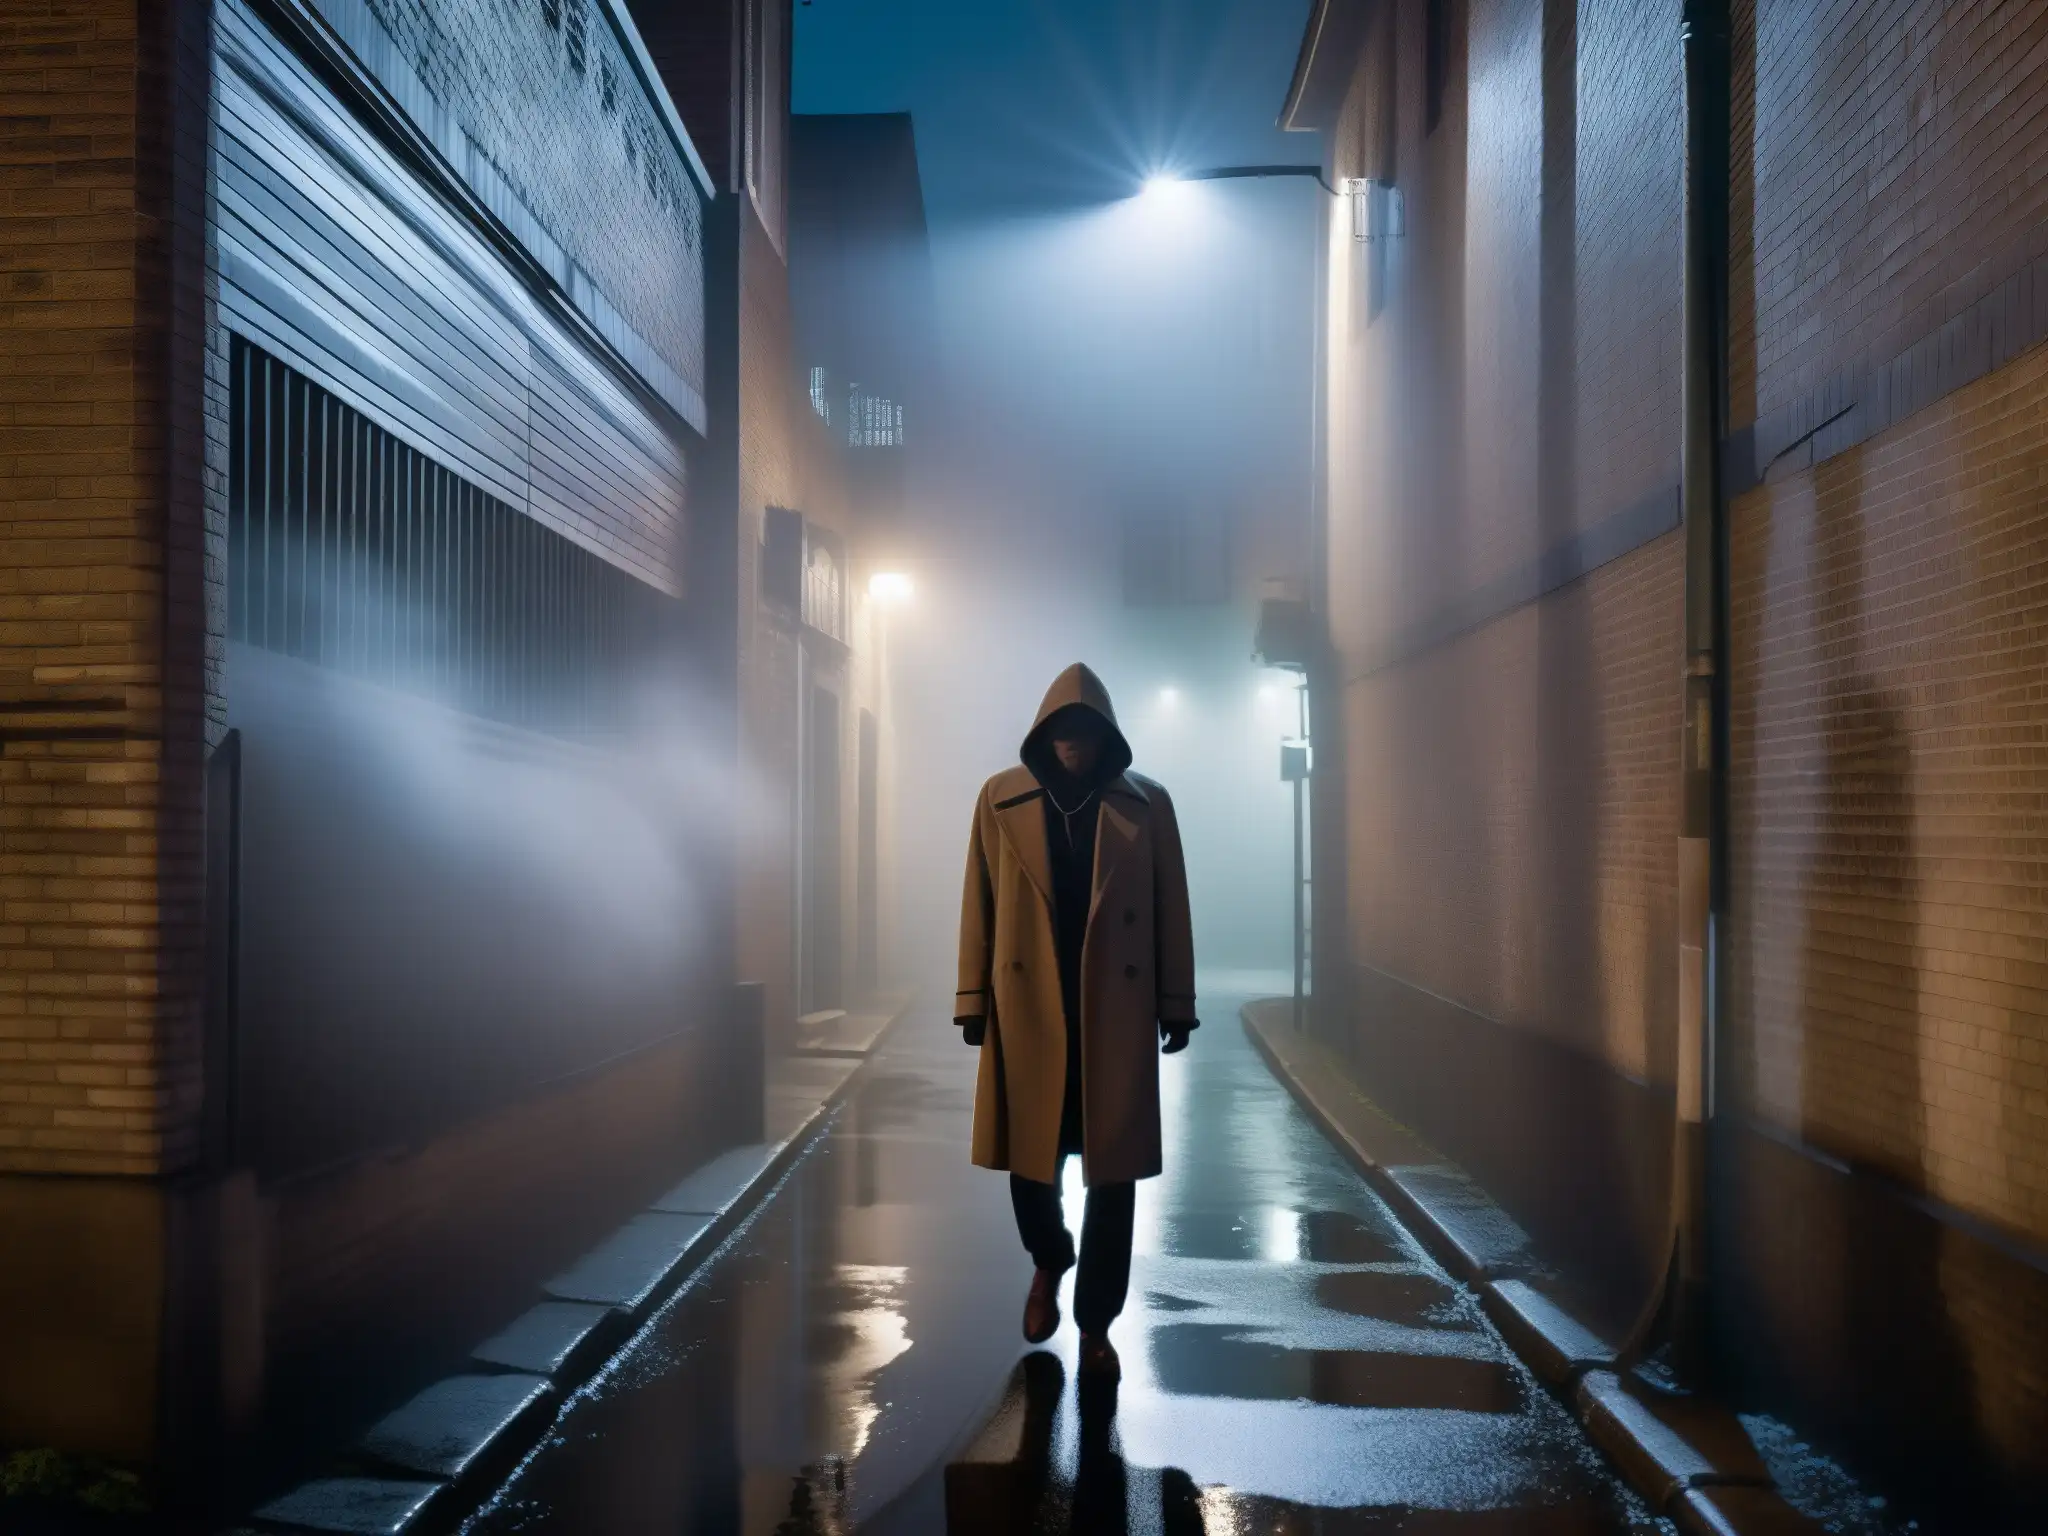 Un callejón oscuro de noche con niebla y una figura fantasmal, en un estudio sobre apariciones en leyendas urbanas